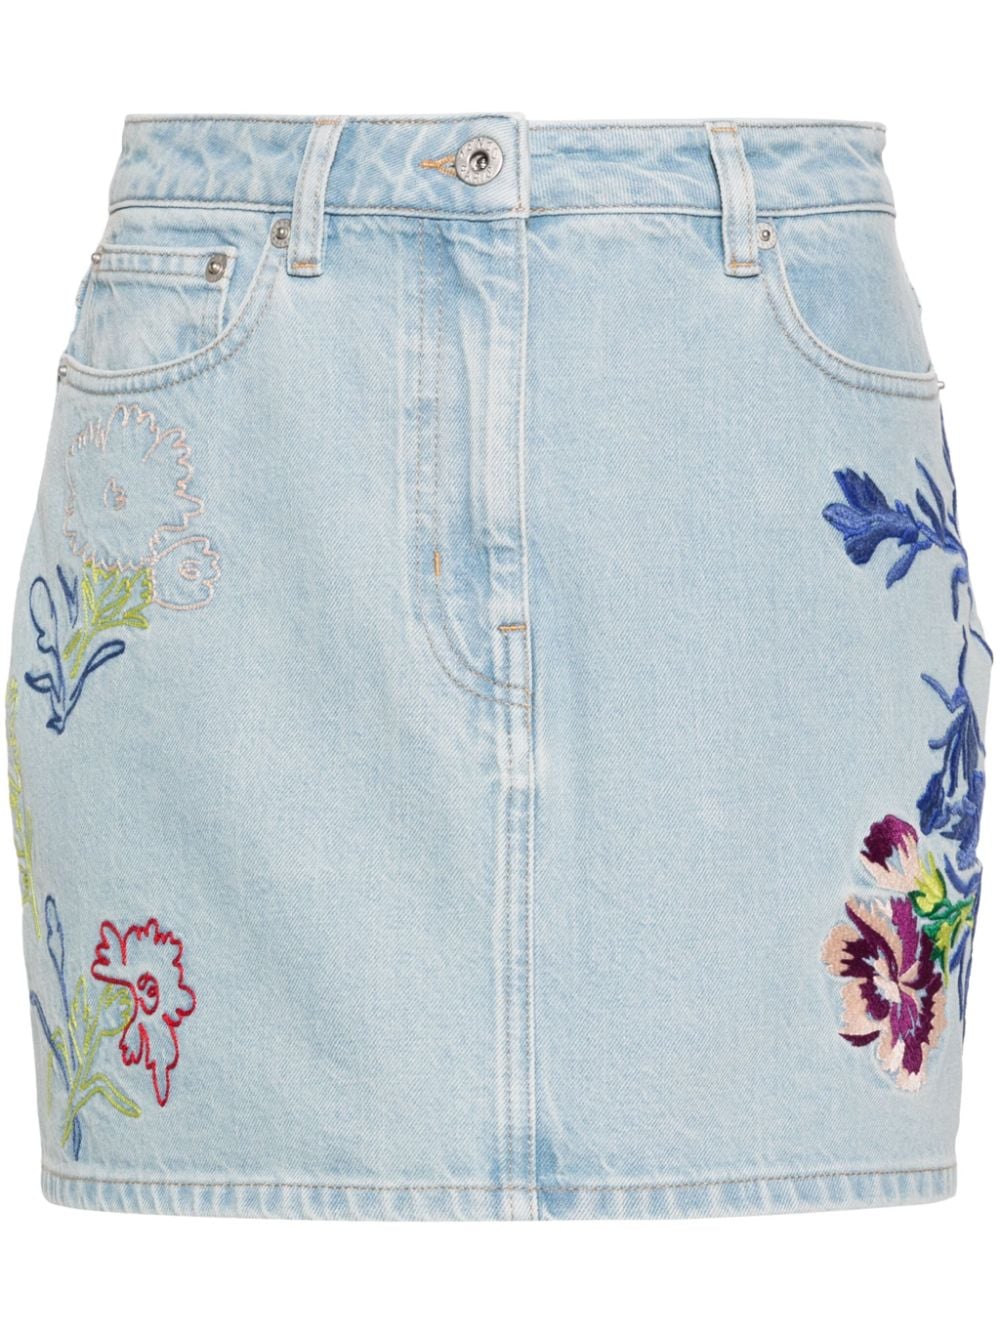 Floral-embroidered denim mini skirt<BR/><BR/><BR/>